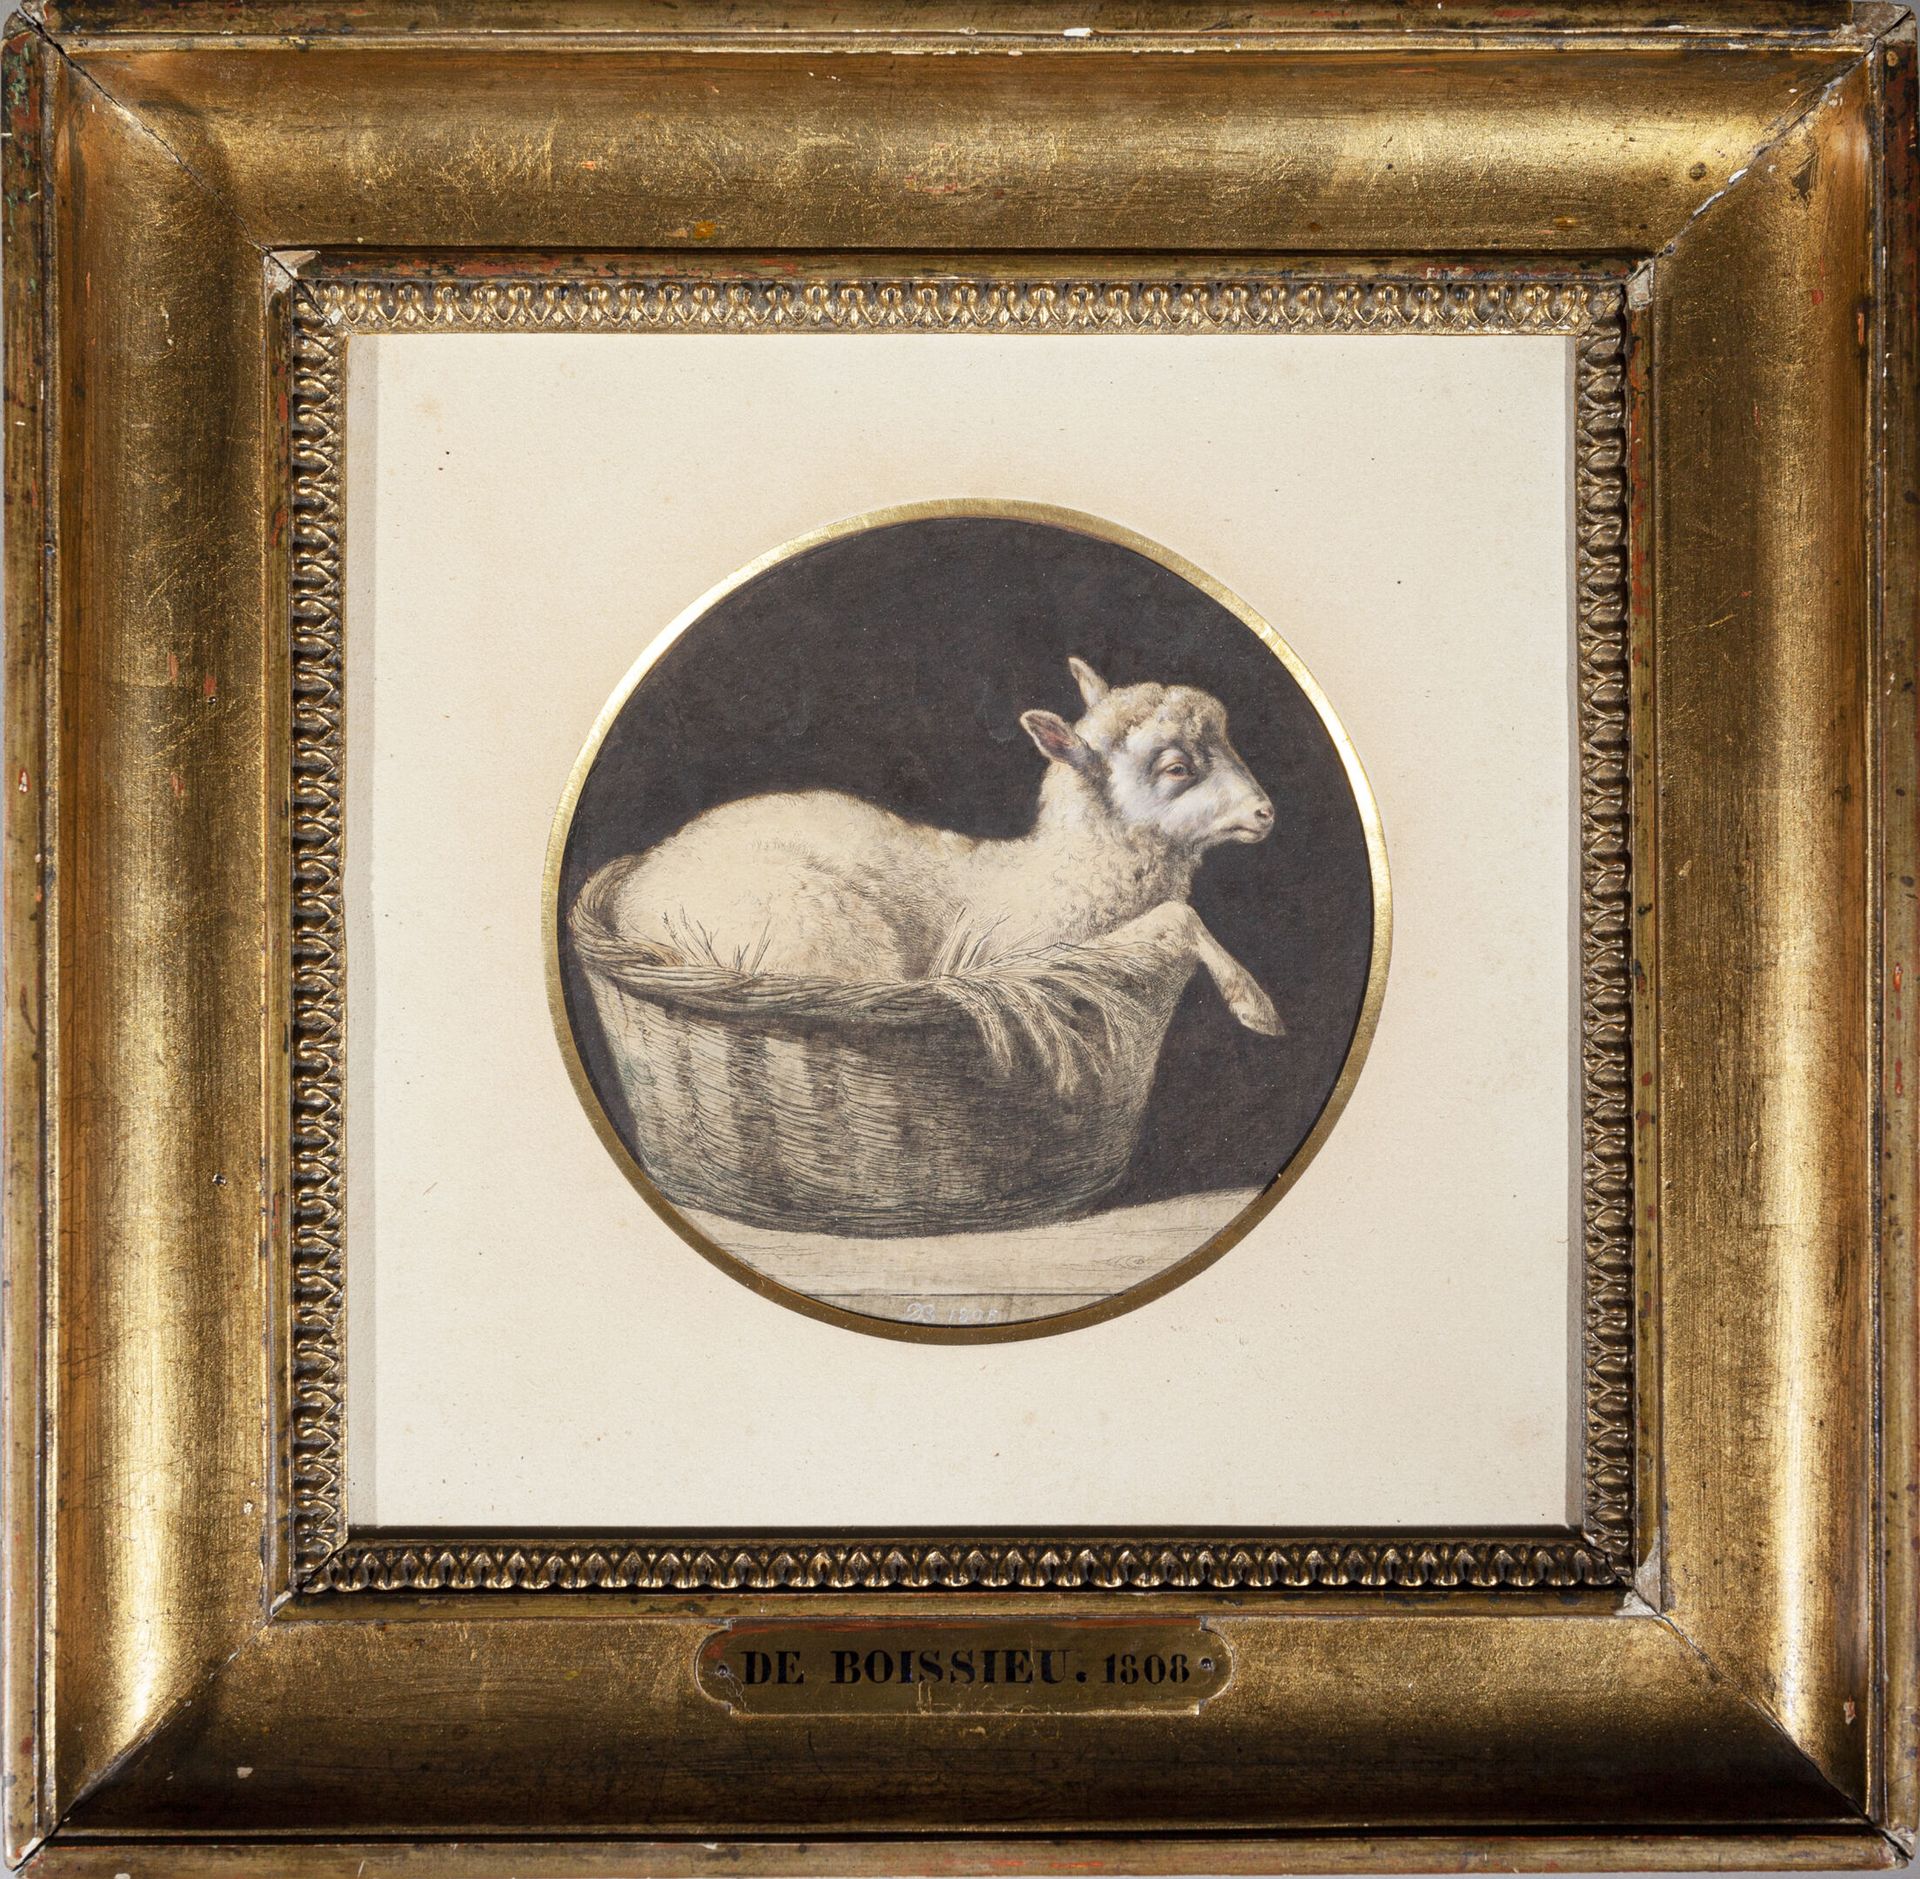 Null Jean-Jacques de BOISSIEU (1736-1810)
L'agneau dans son panier. 1808 
Repris&hellip;